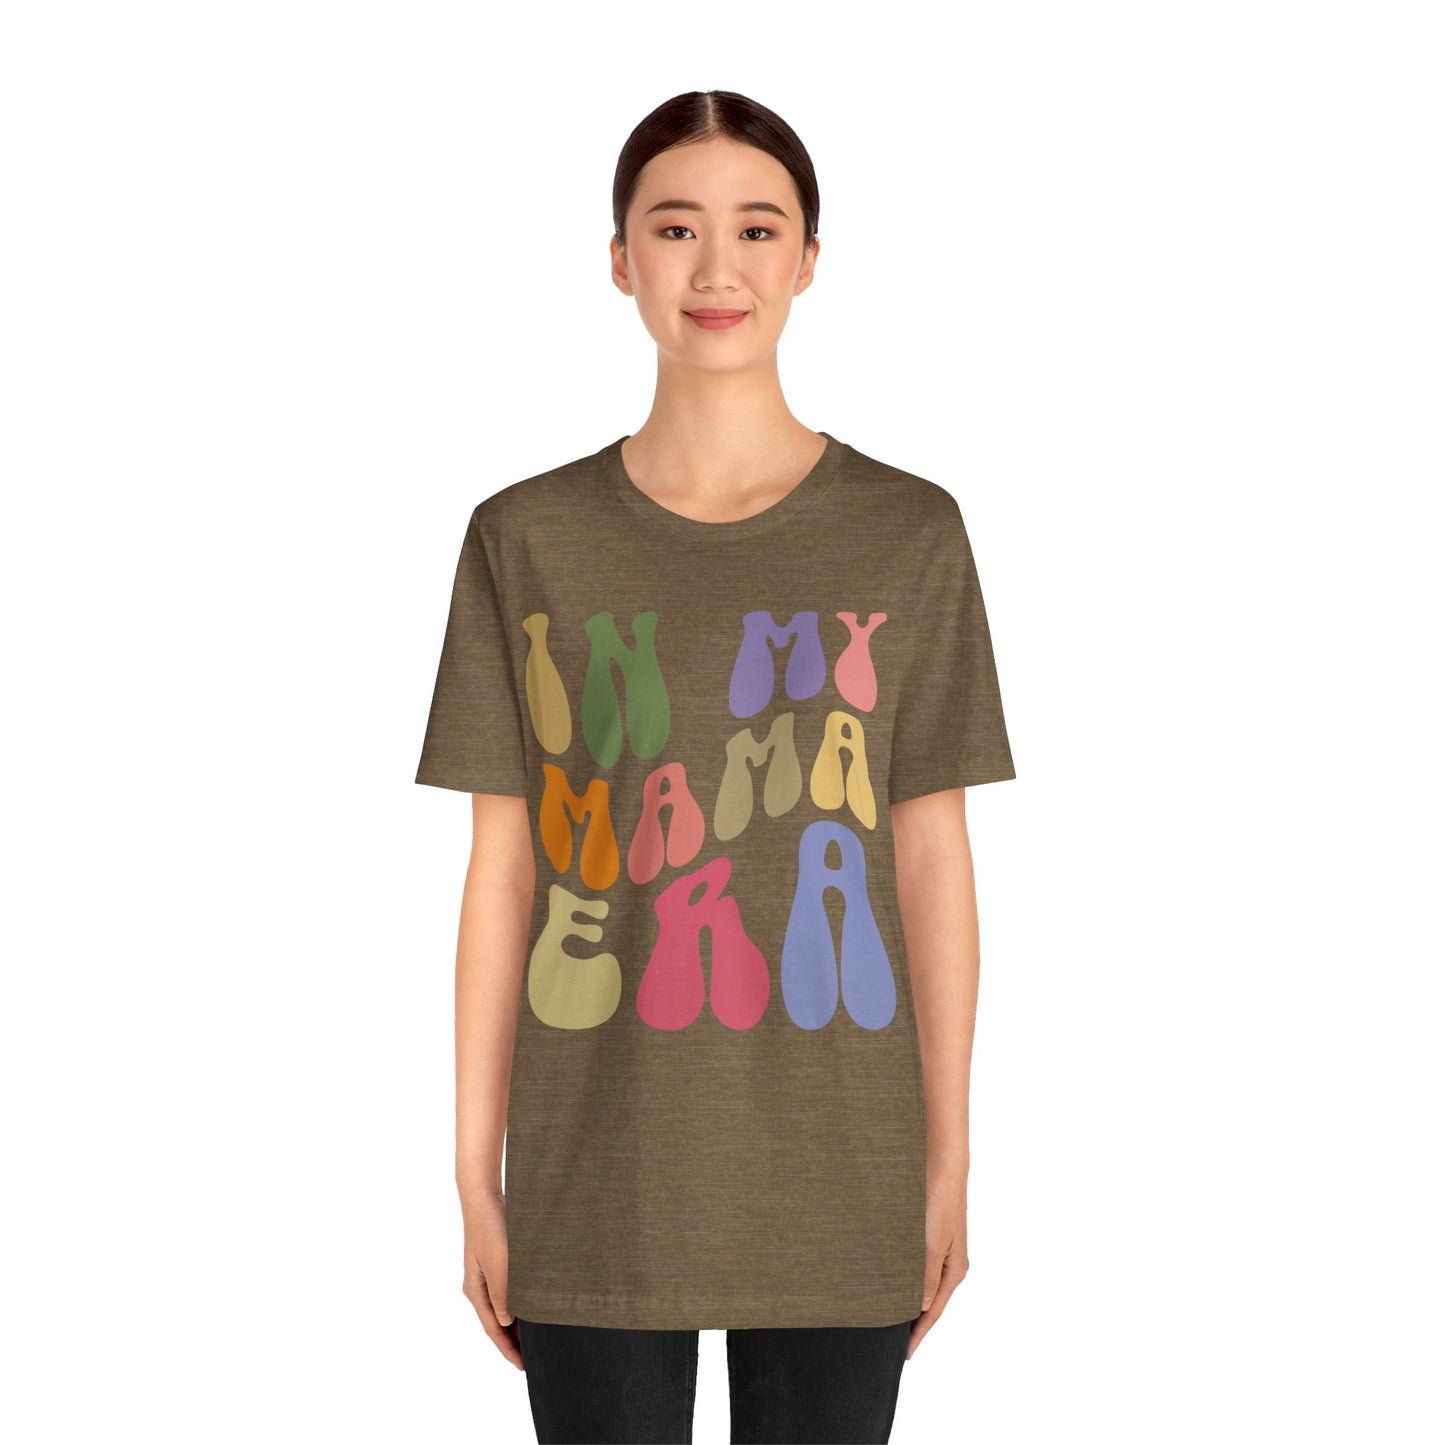 In My Mama Era Shirt, In My Mom Era, Mama T shirt, Mama Crewneck, Mama Shirt, Mom Shirt, Eras Shirt, New Mom T shirt, T1091